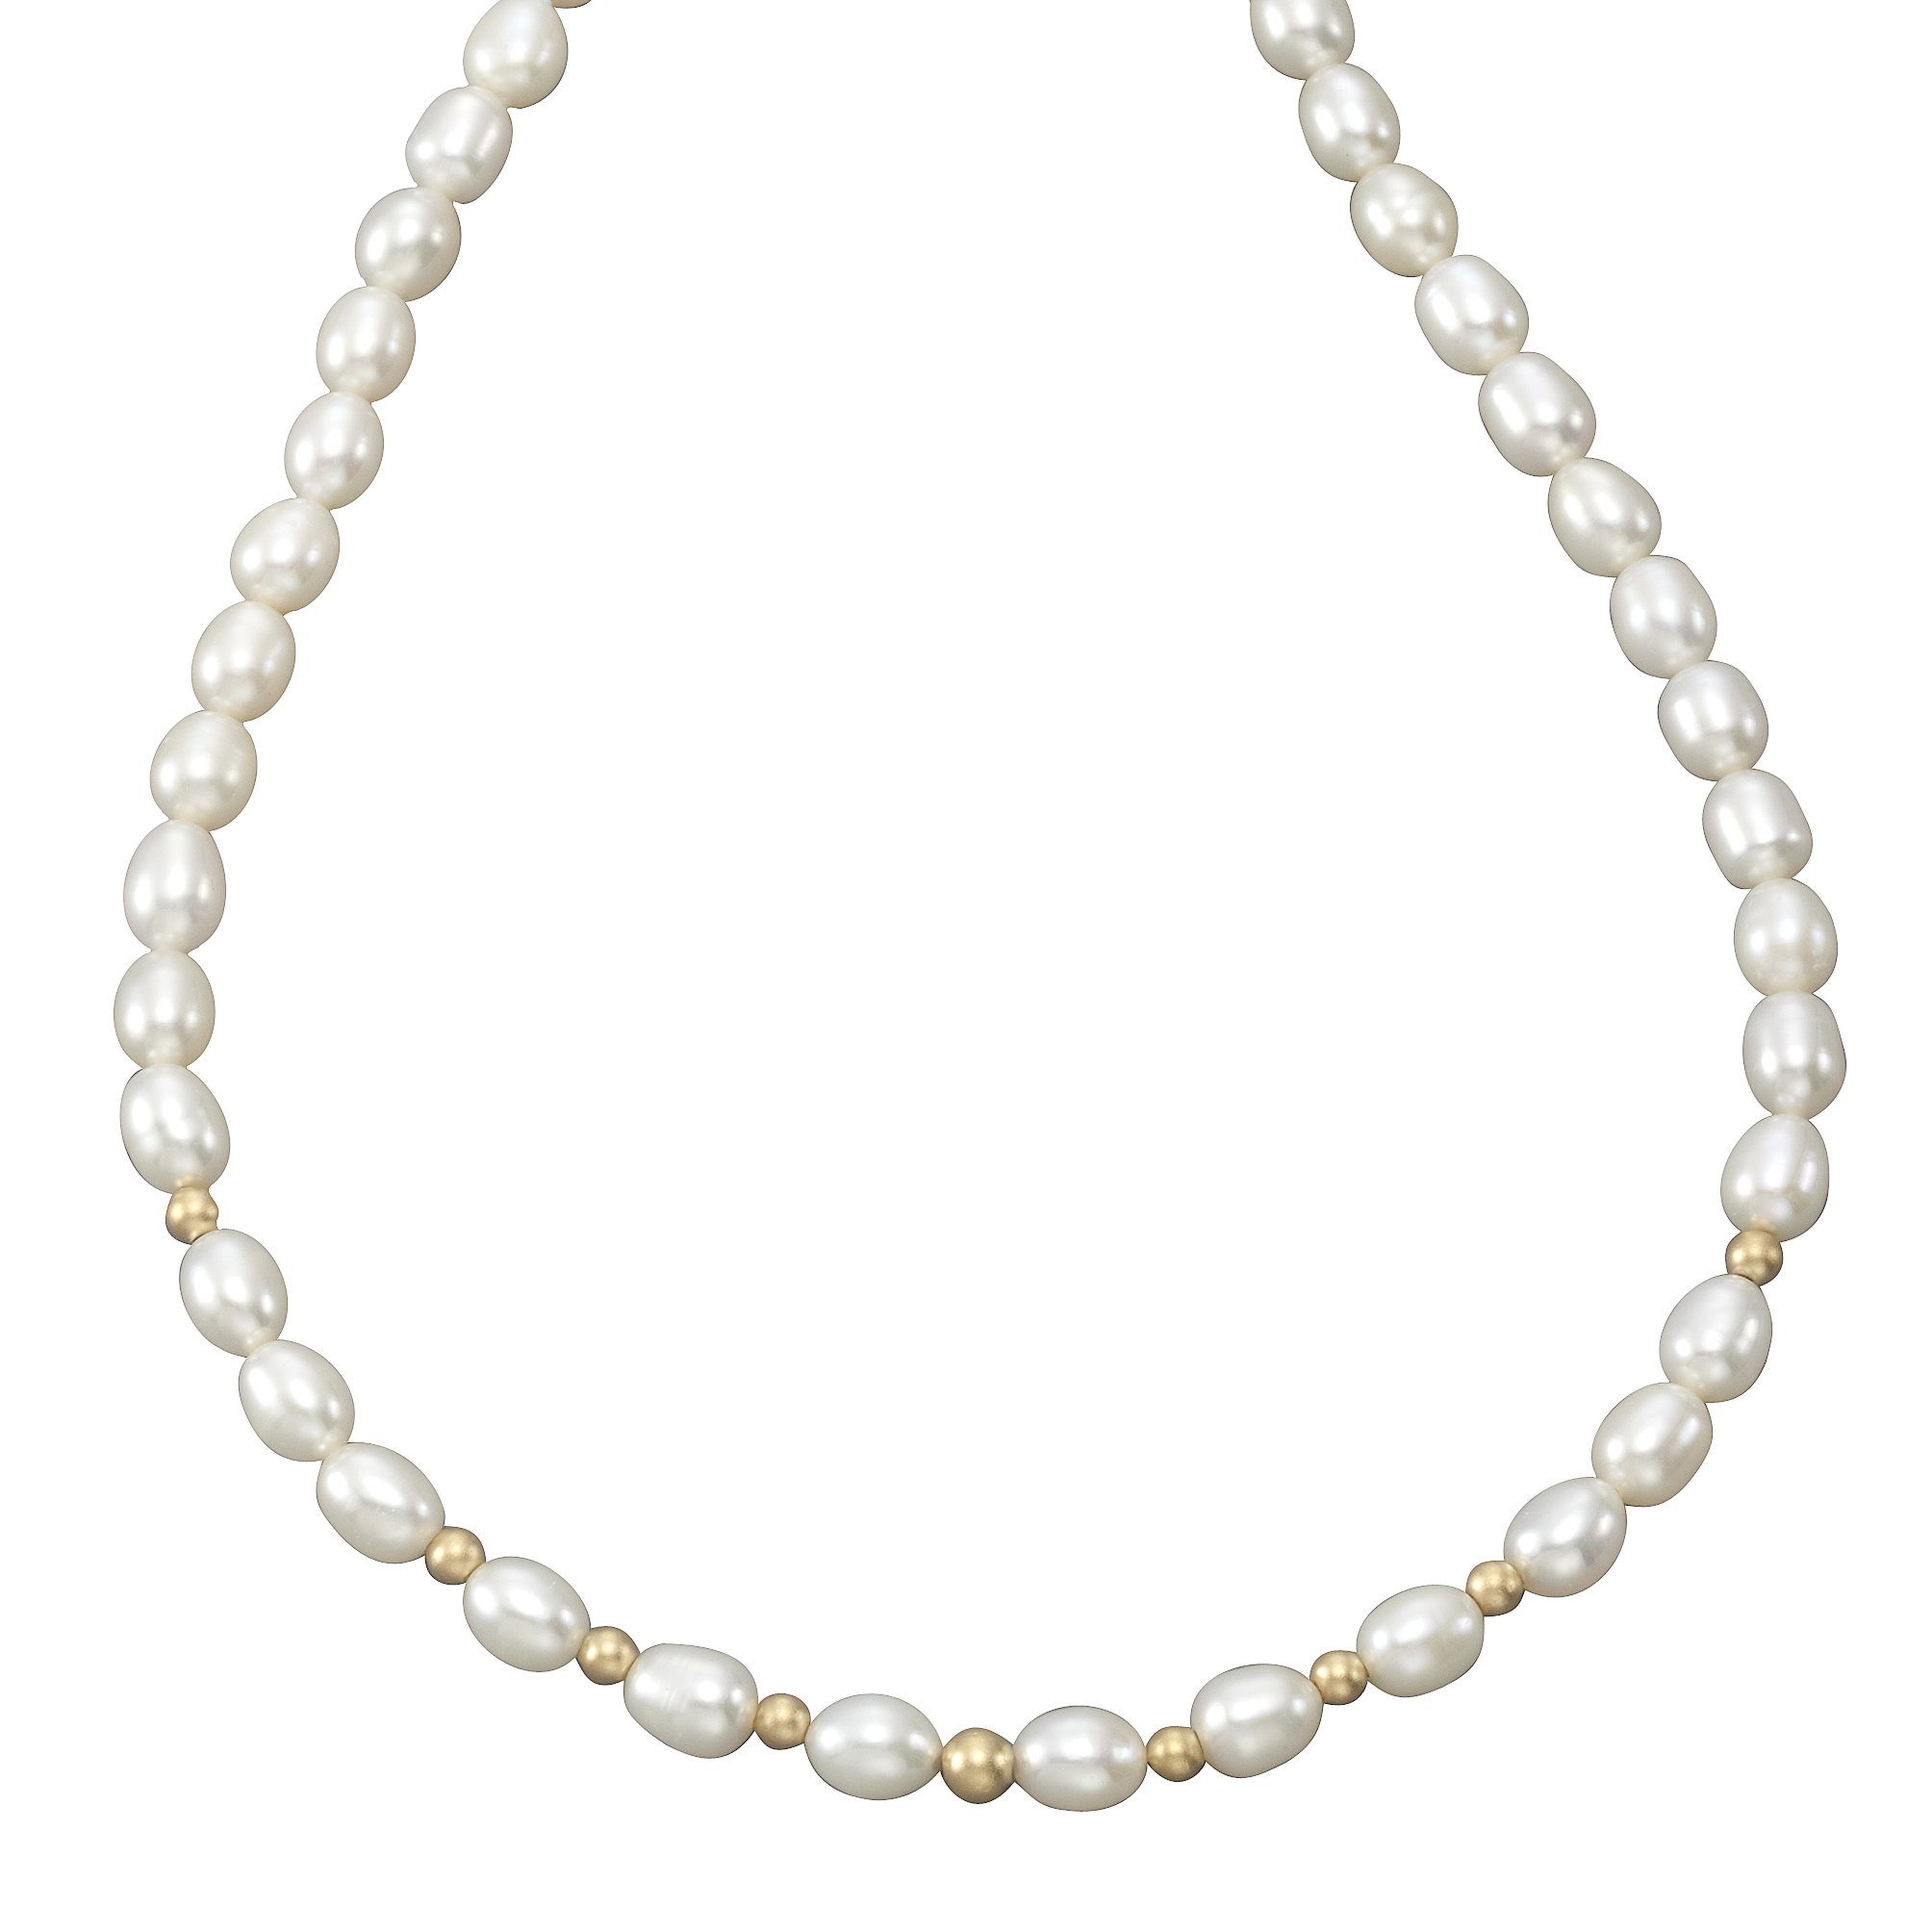 Vivance Collierkettchen 585 Gold Perlen weiß 7-7,5mm Goldkugeln